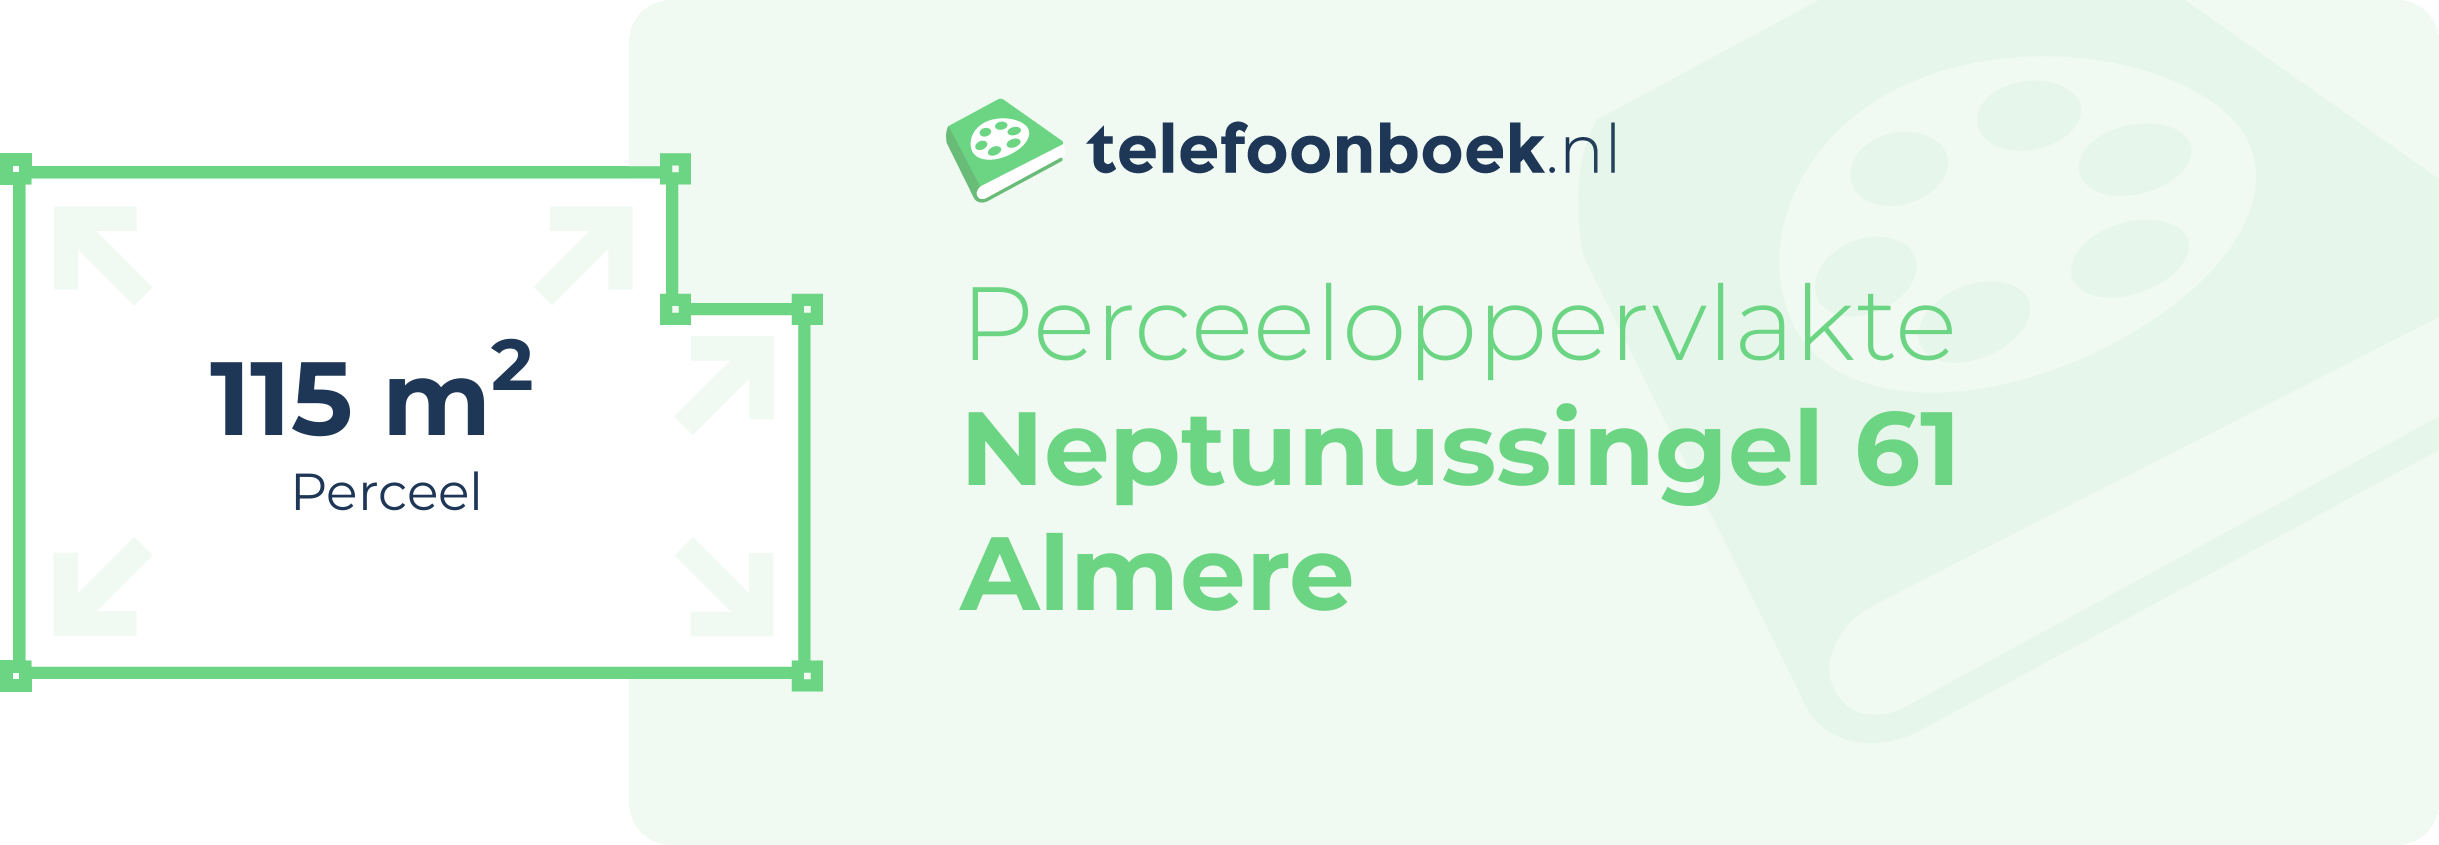 Perceeloppervlakte Neptunussingel 61 Almere